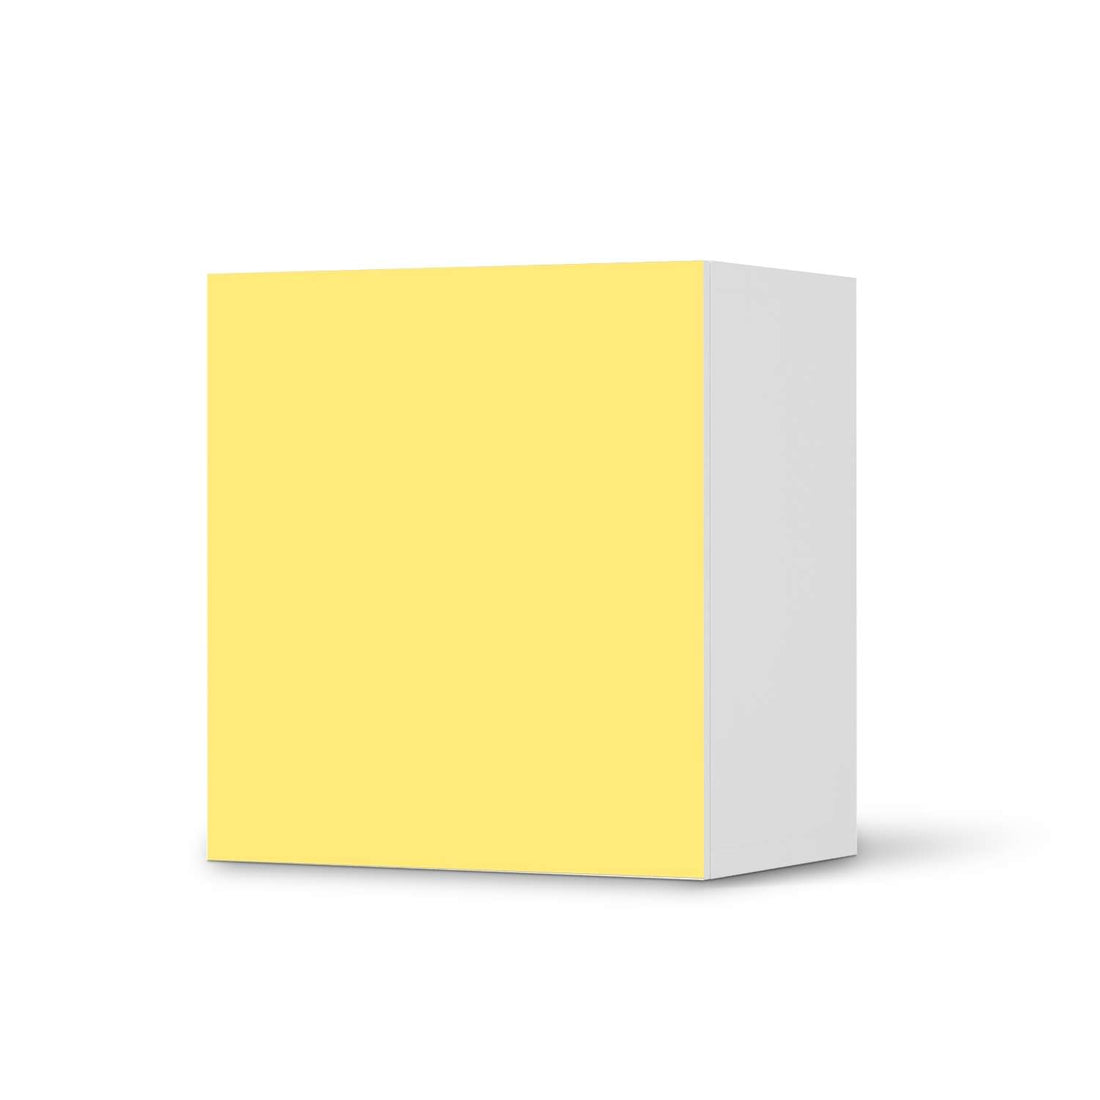 Klebefolie für Möbel Gelb Light - IKEA Besta Regal 1 Türe  - weiss